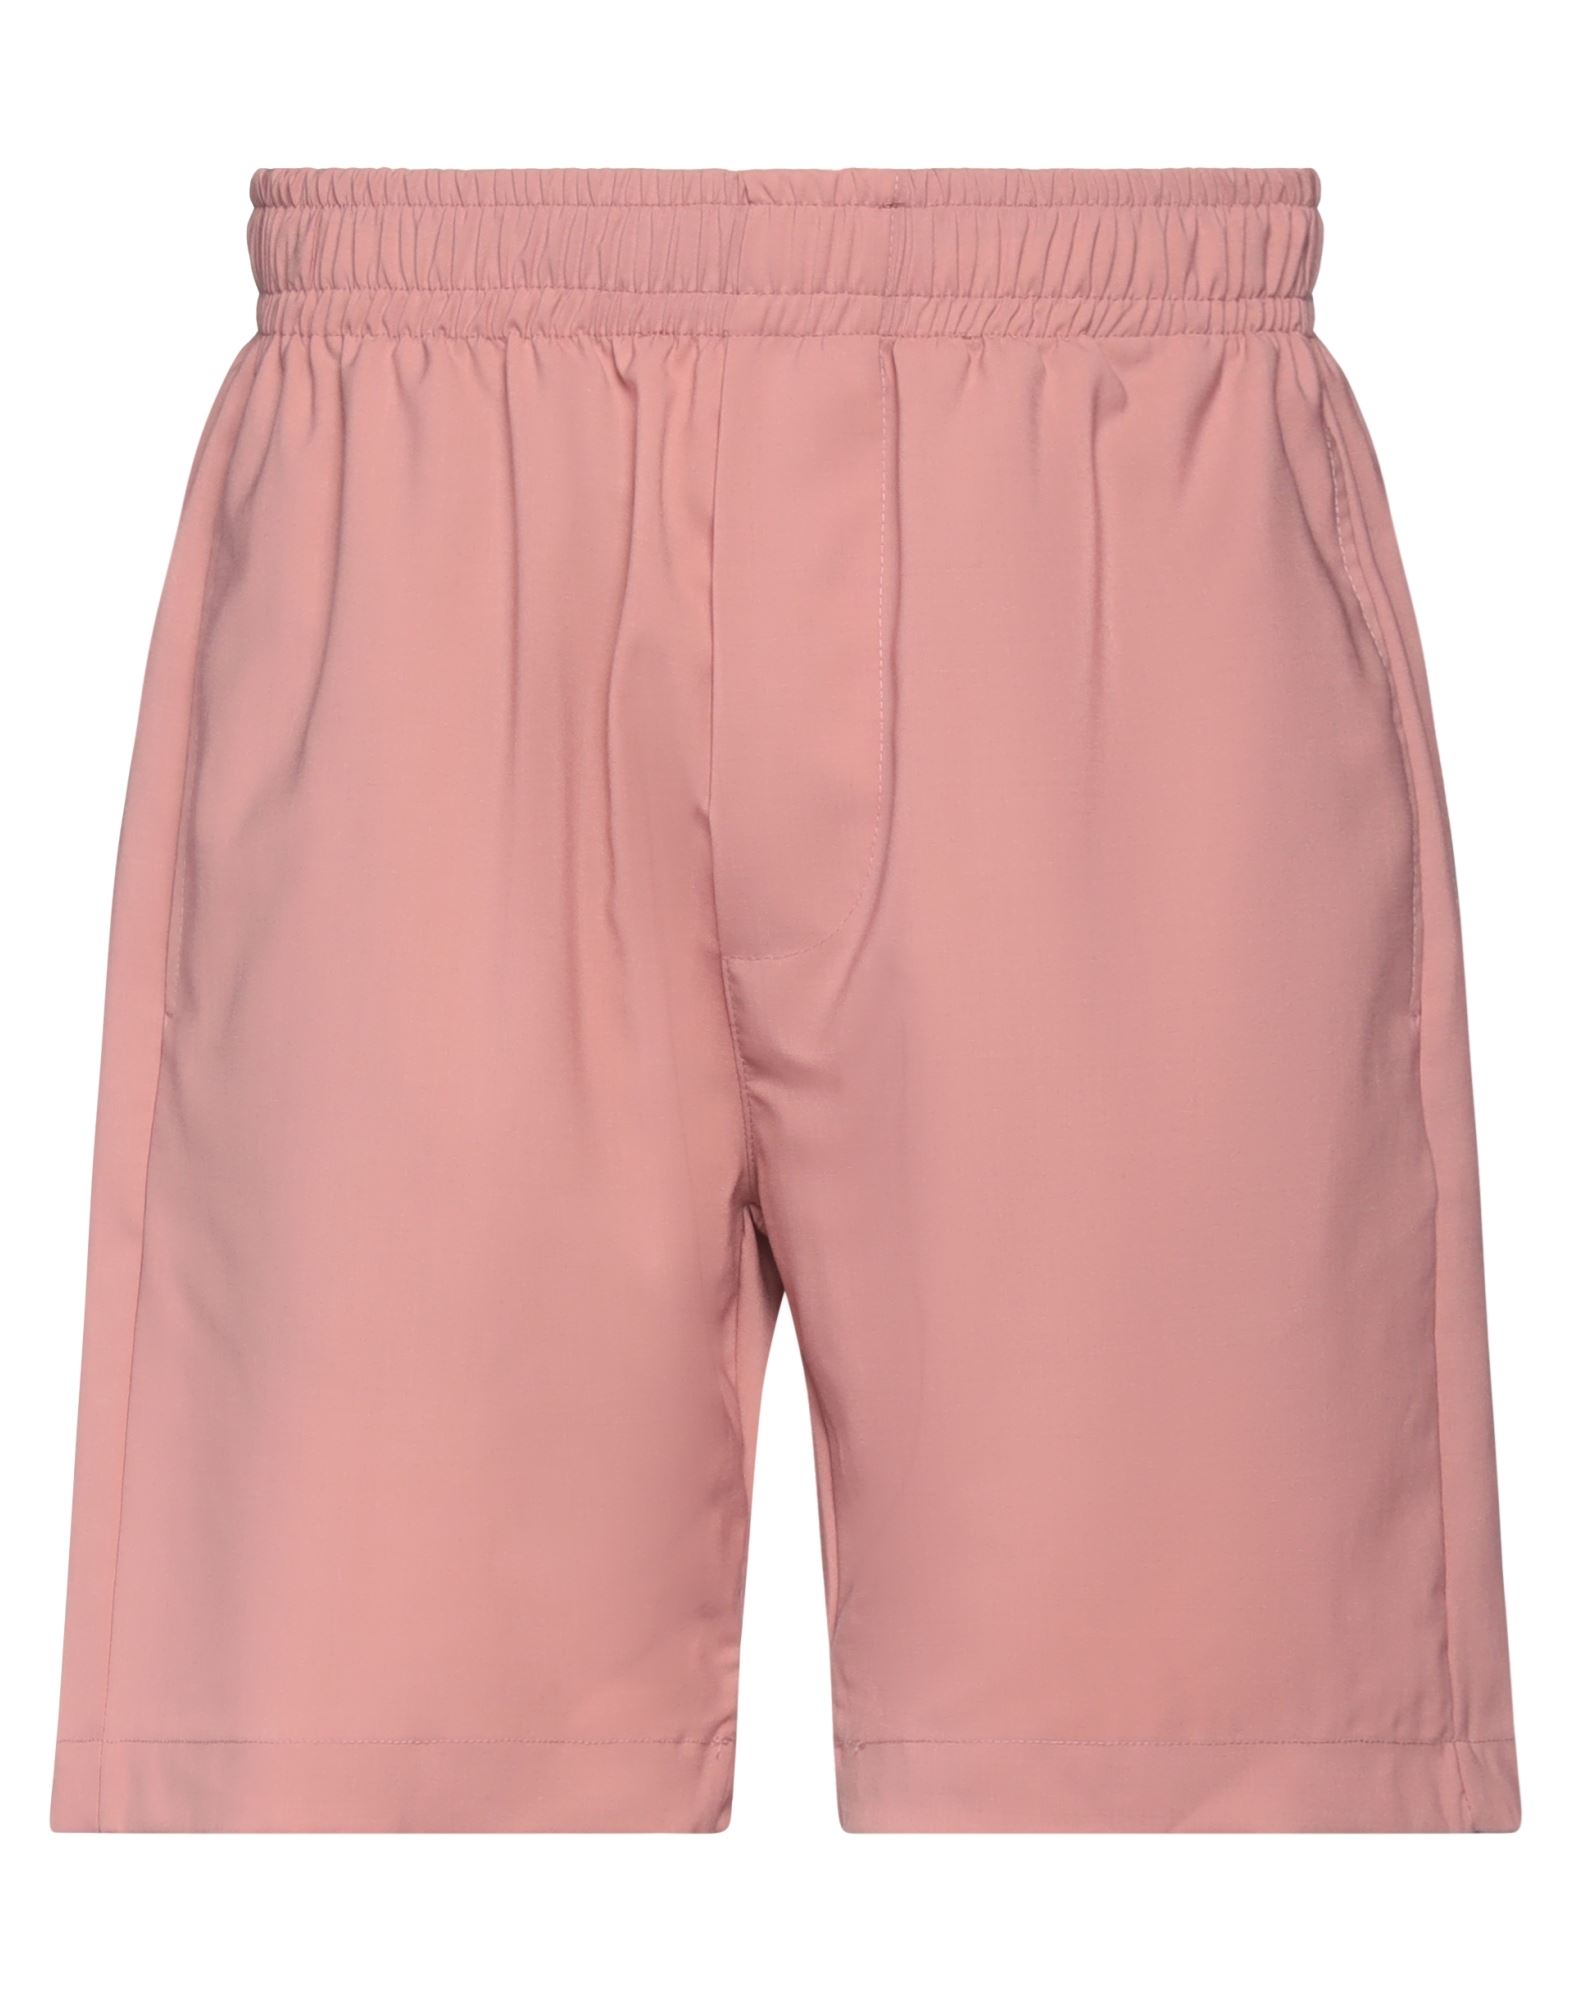 Yes London Man Shorts & Bermuda Shorts Pink Size M Virgin Wool, Polyester, Elastane